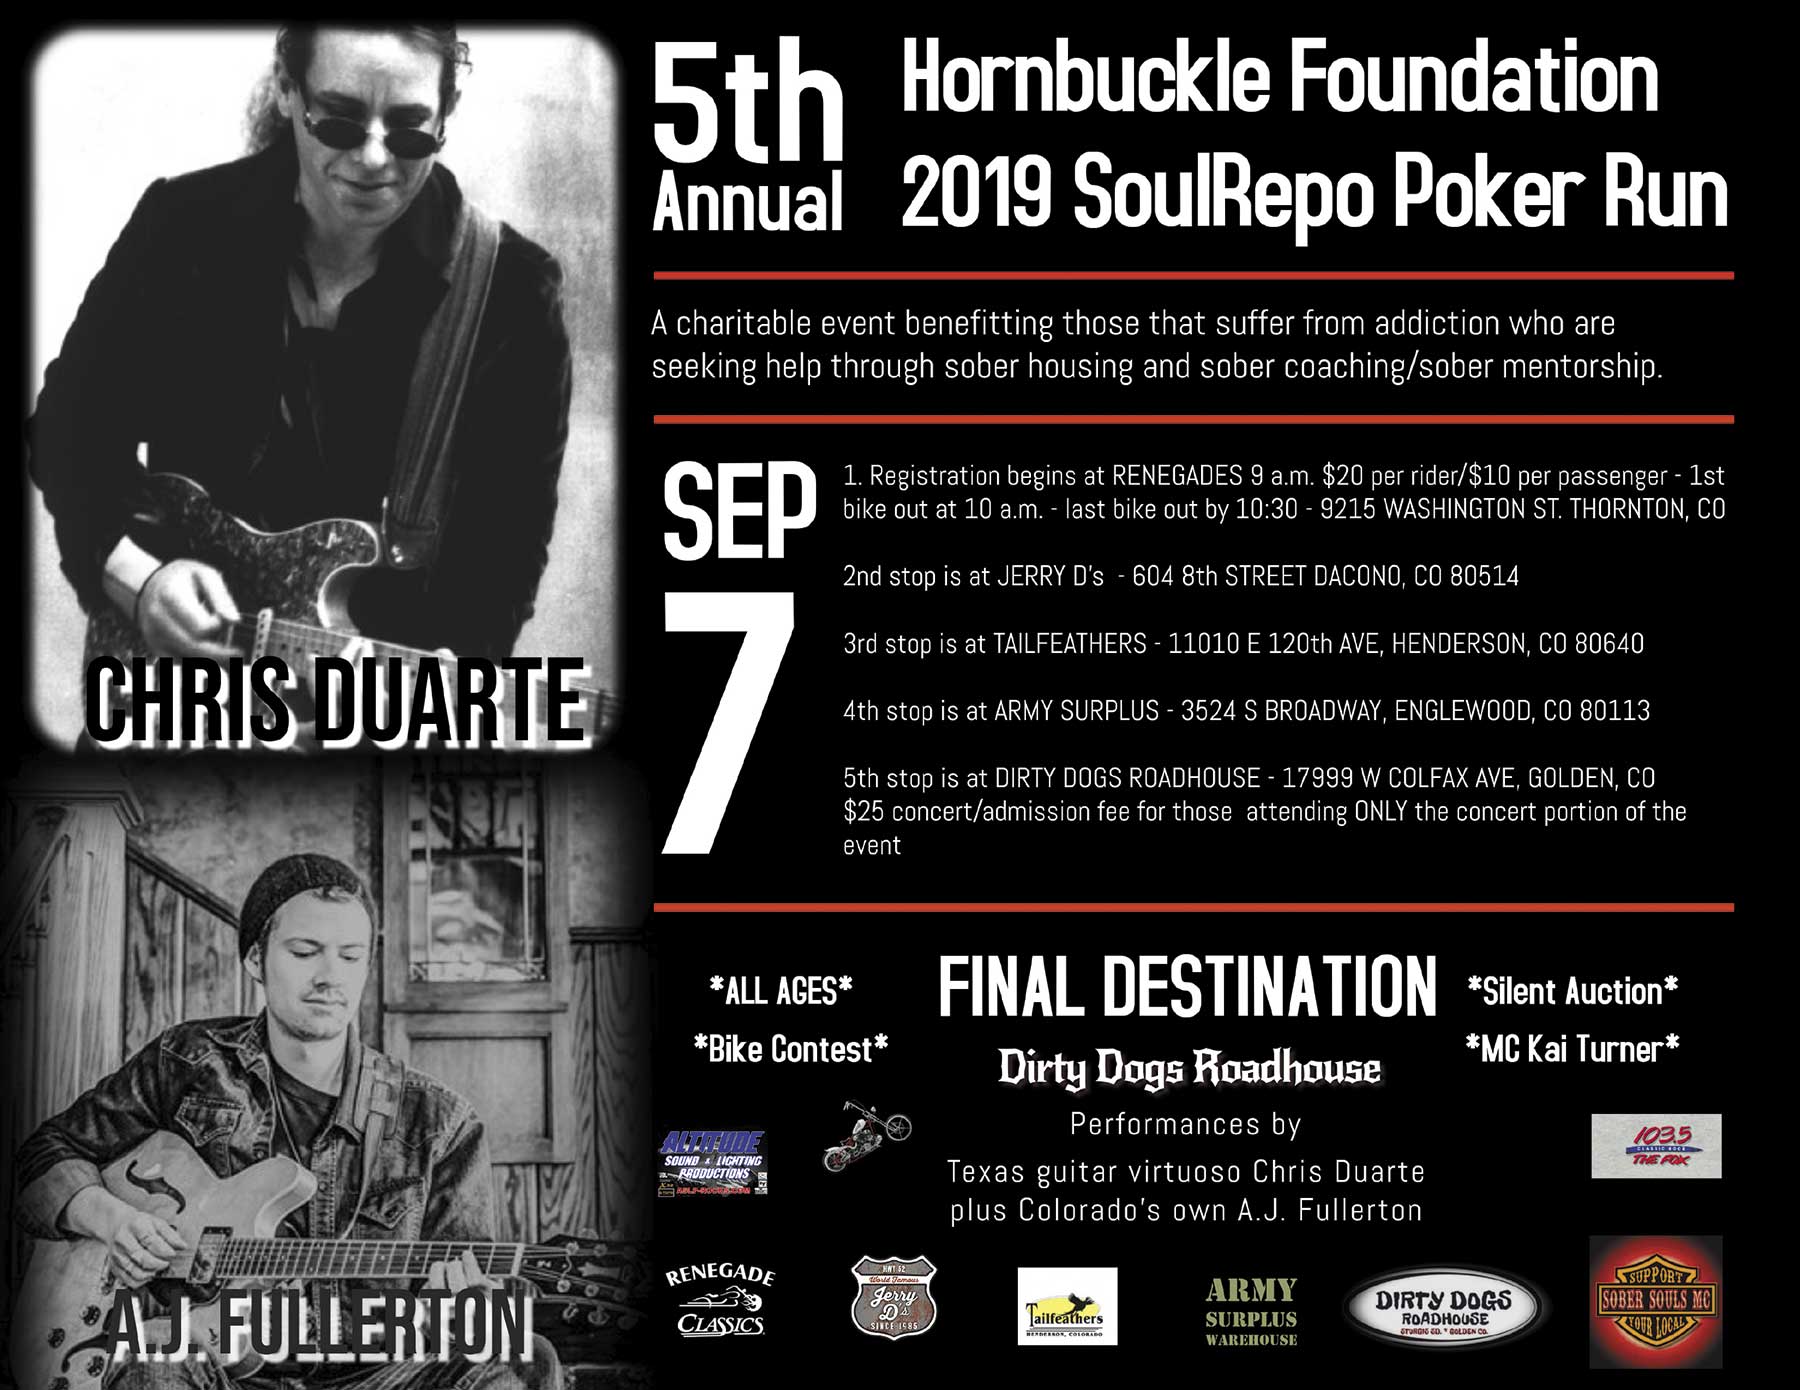 Hornbuckle Foundation 5th Annual Poker Run set for September 7th